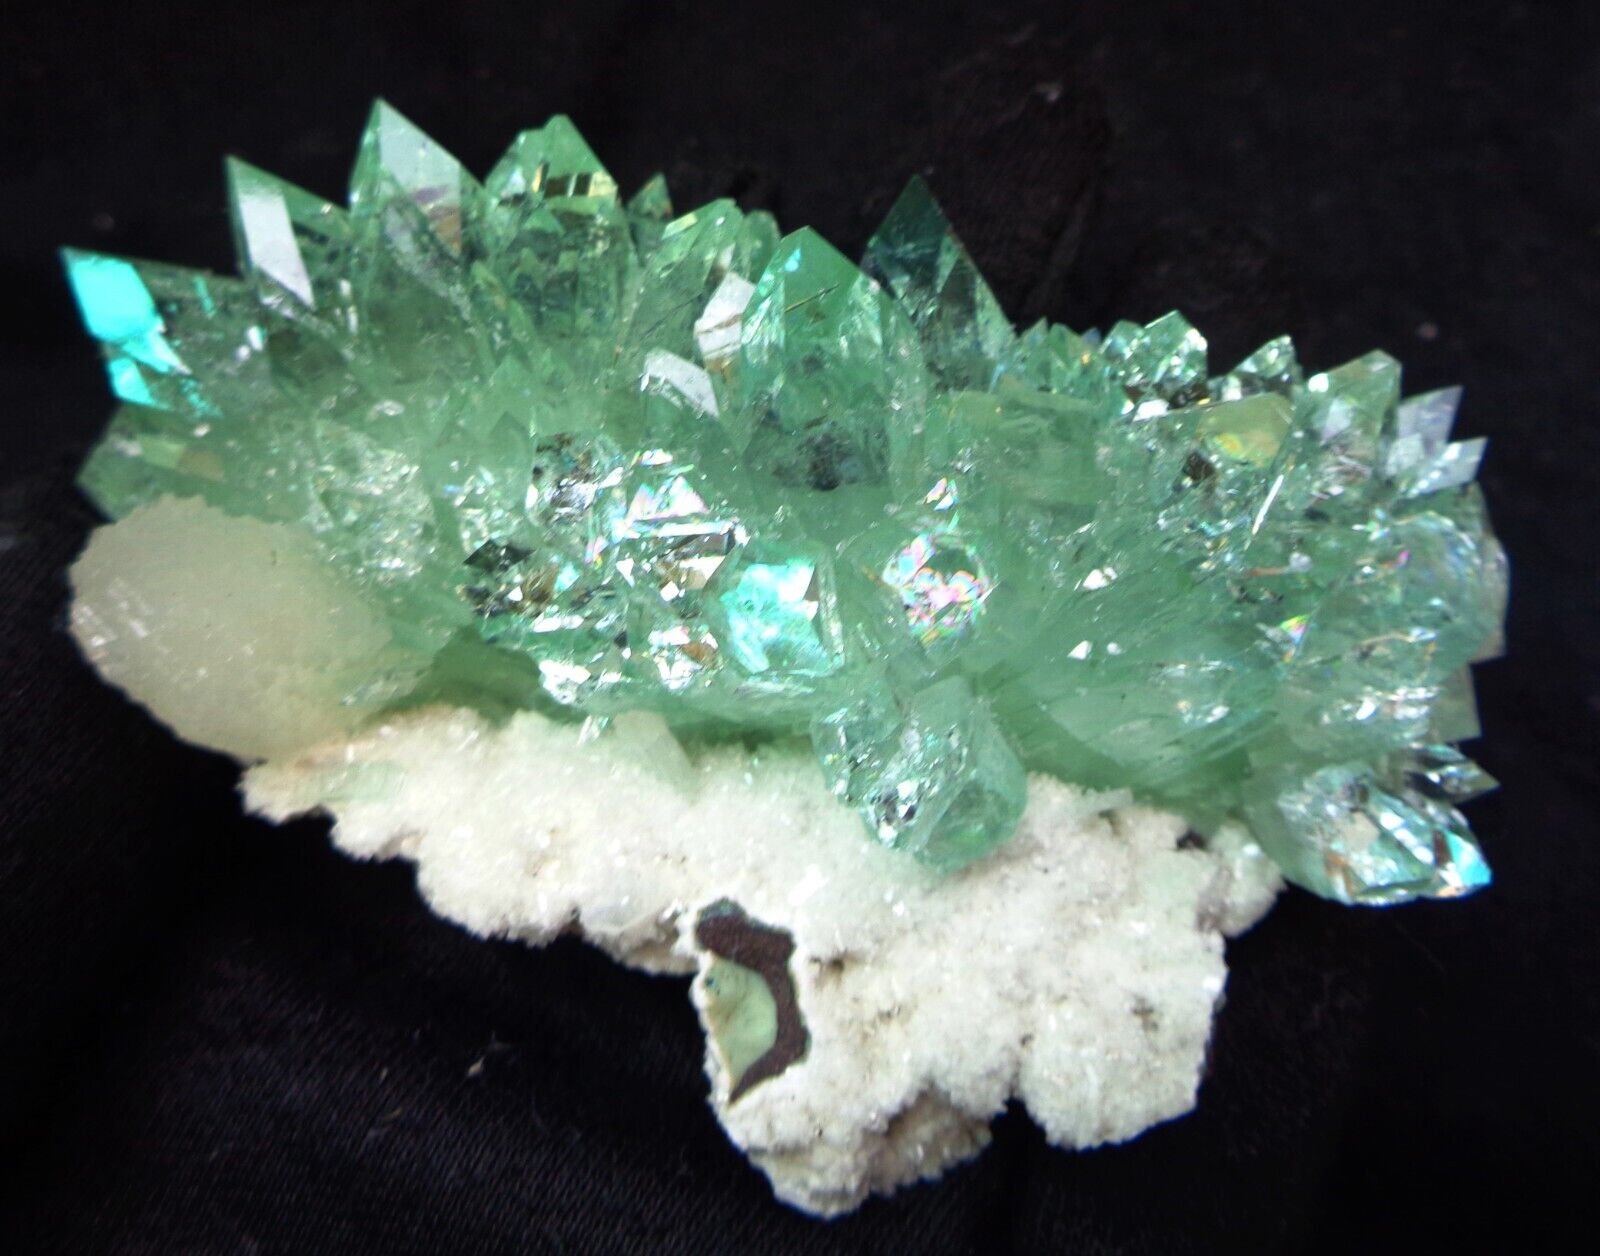 Green Apophyllite Crystals w/ Silbite On Matrix Minerals Specimen